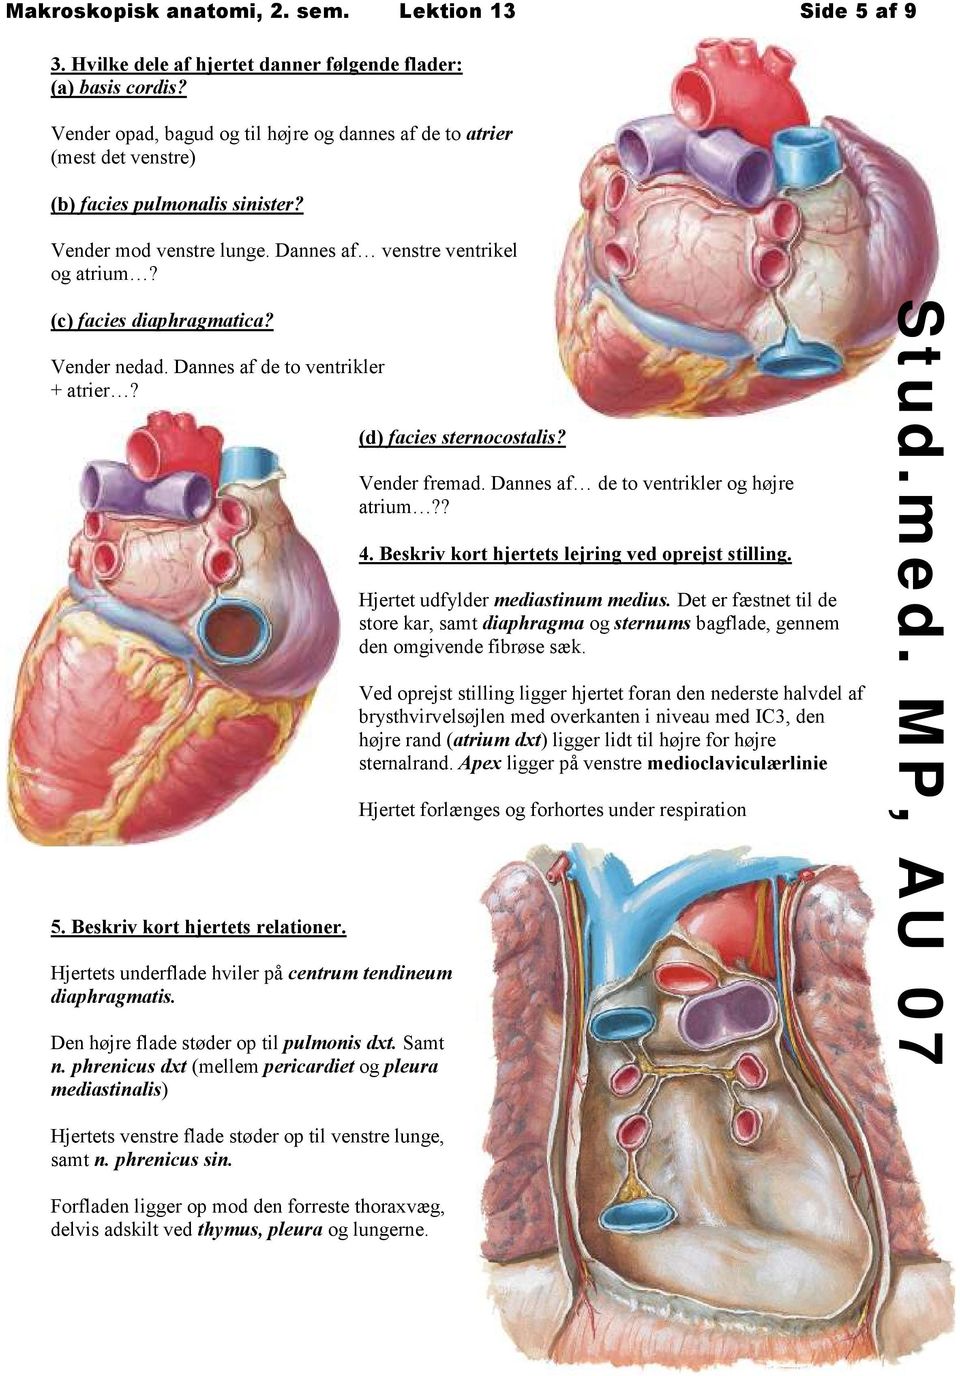 Vender nedad. Dannes af de to ventrikler + atrier? 5. Beskriv kort hjertets relationer. Hjertets underflade hviler på centrum tendineum diaphragmatis. Den højre flade støder op til pulmonis dxt.